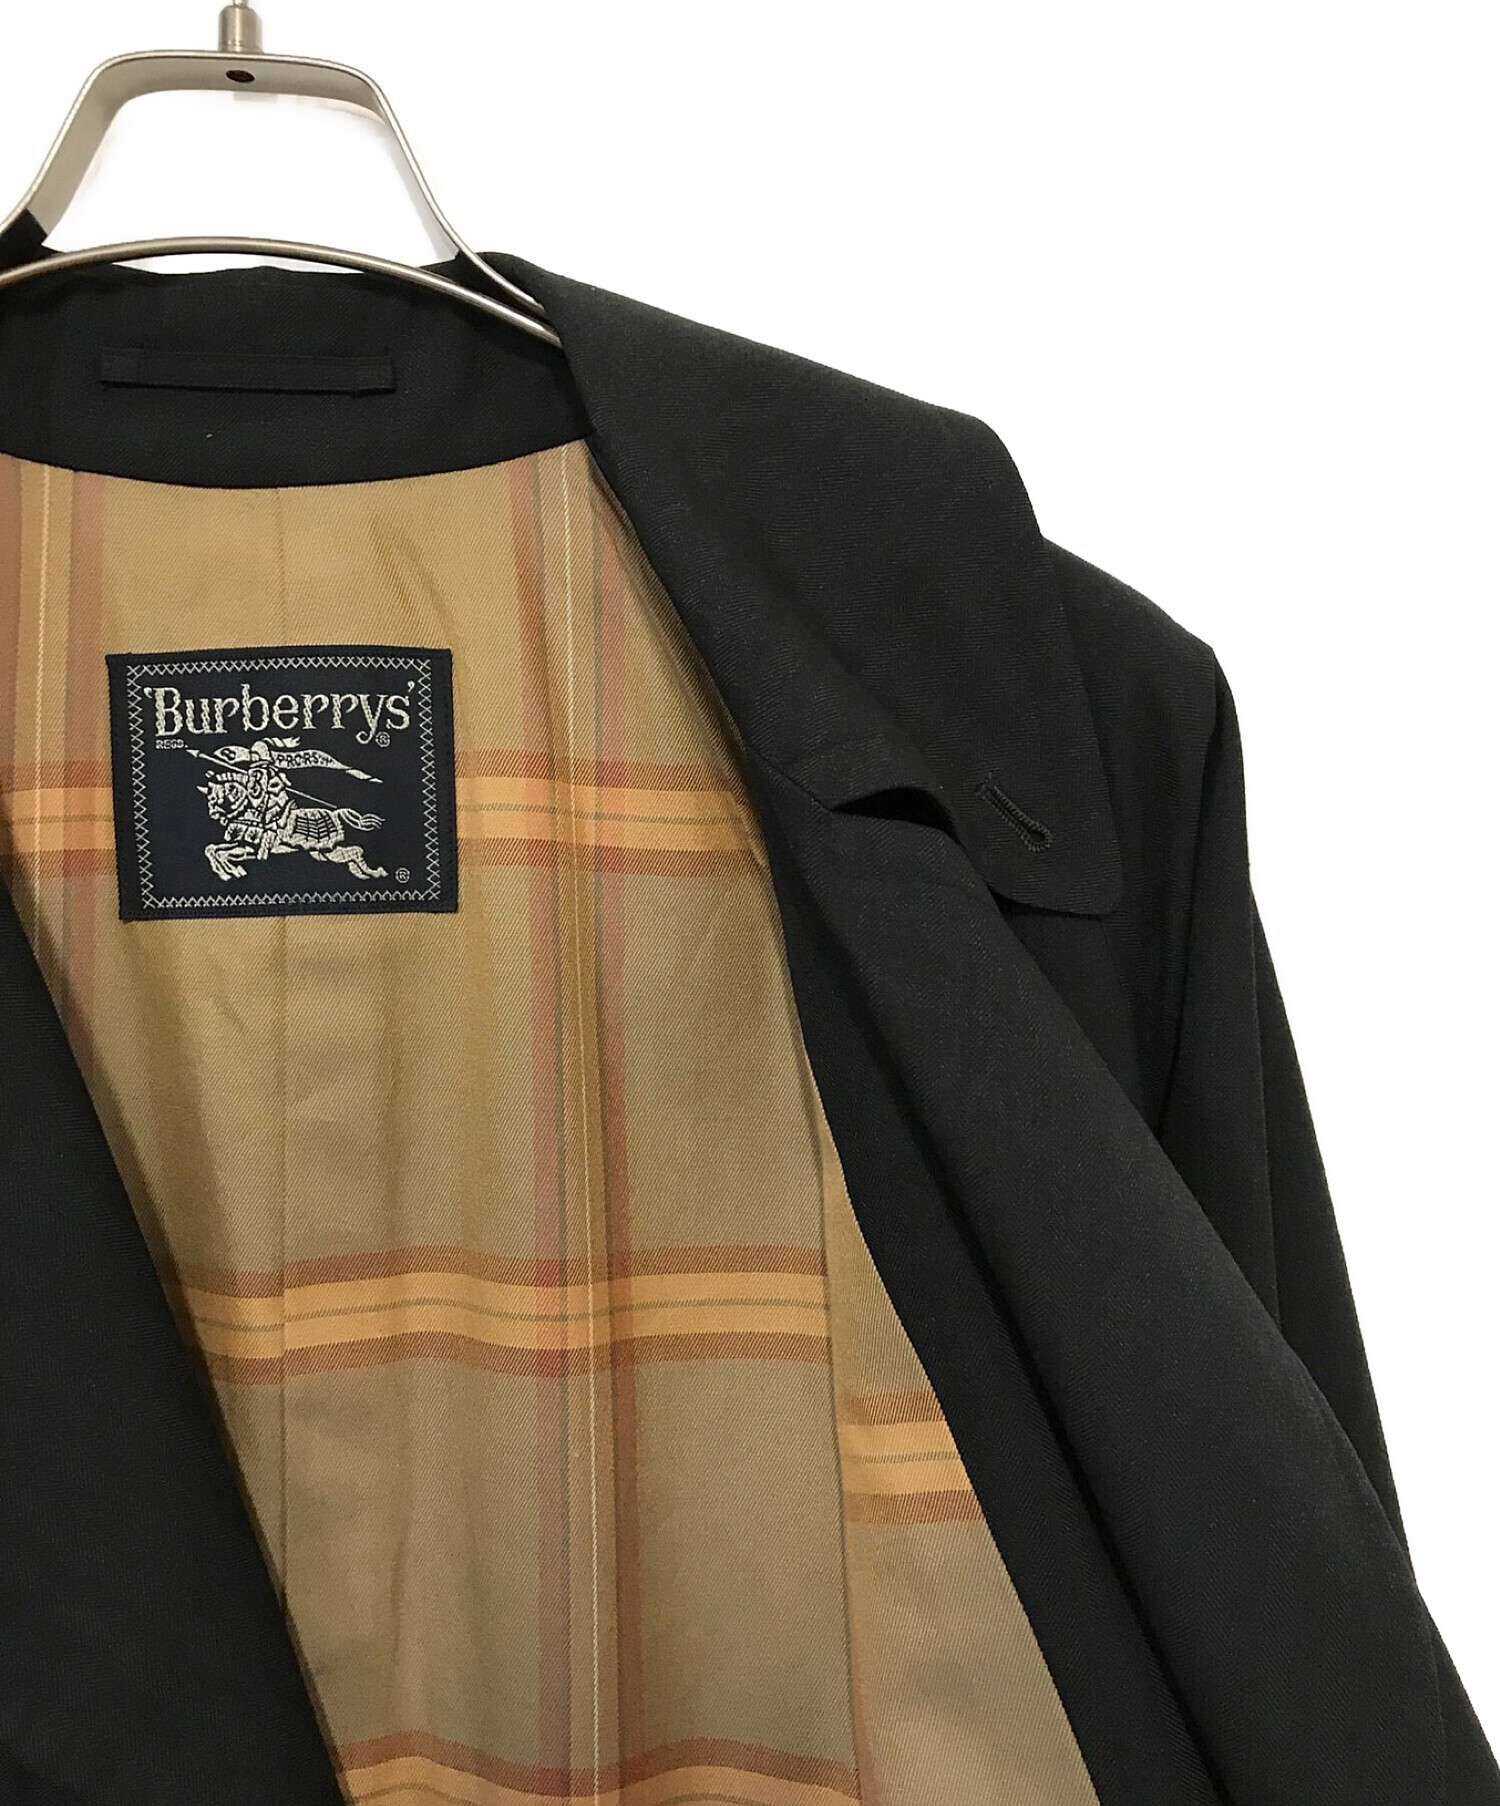 Burberry's (バーバリーズ) 【ヴィンテージ】【一枚袖】タイロッケンコート ブラック サイズ:MA